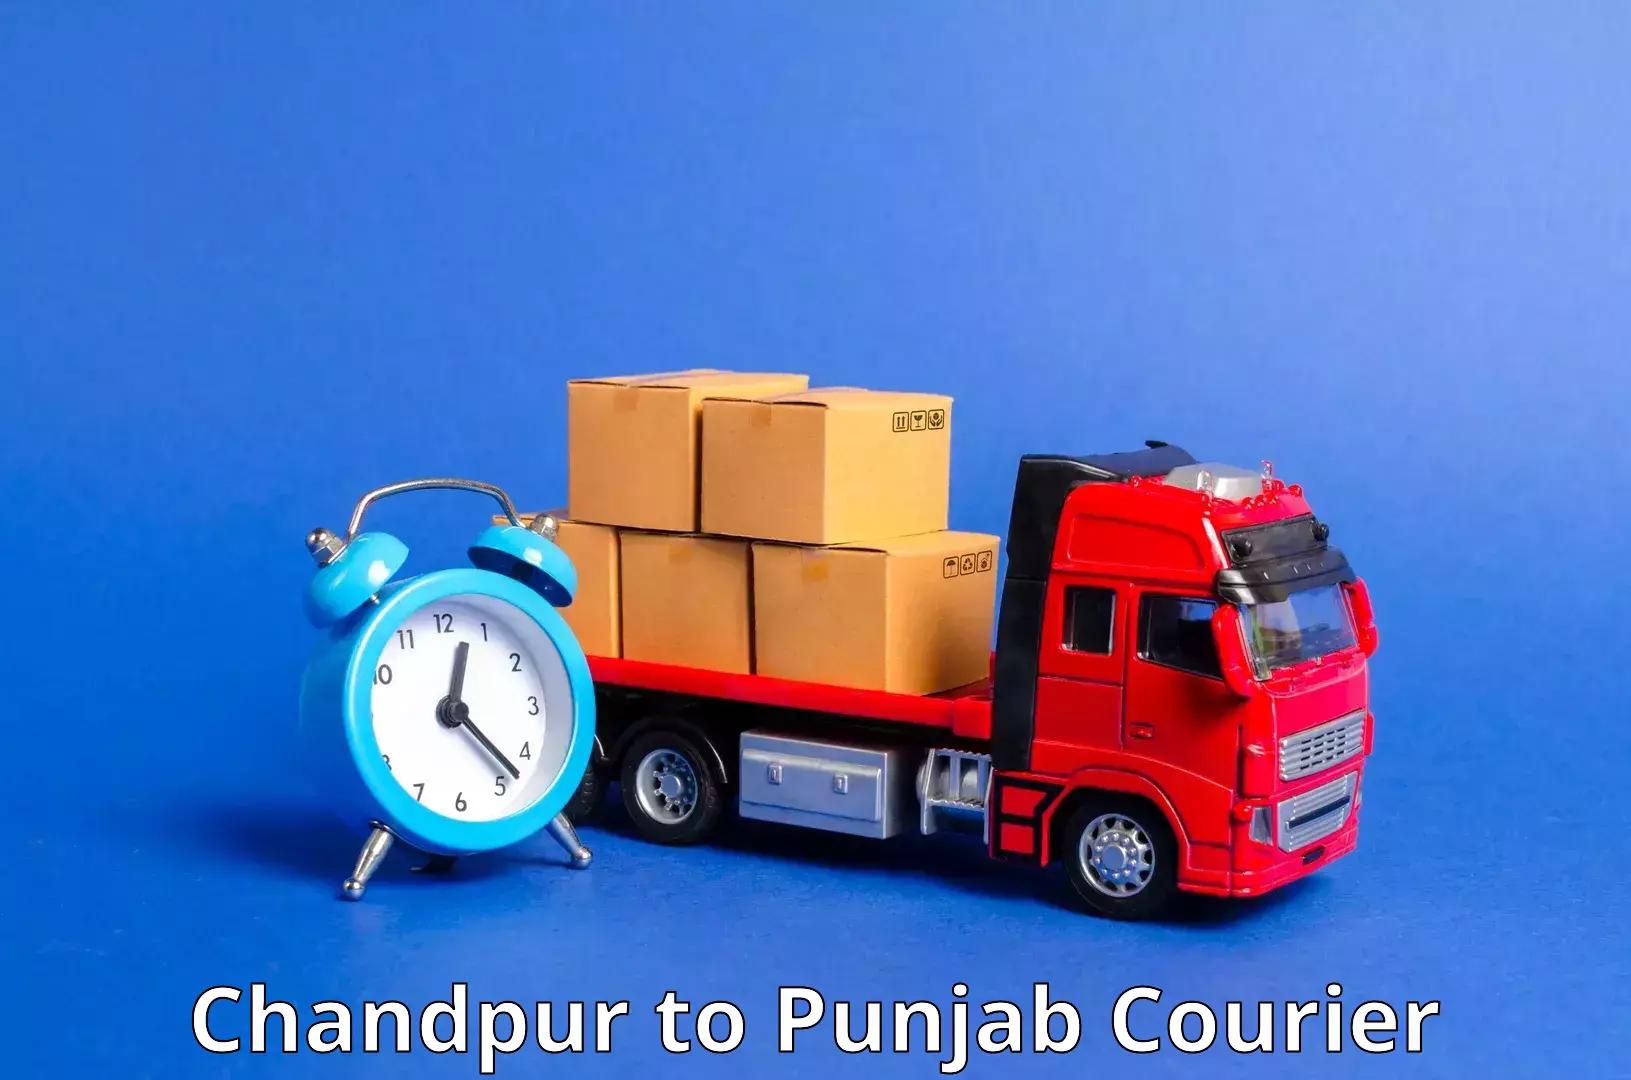 Scheduled delivery Chandpur to Sirhind Fatehgarh